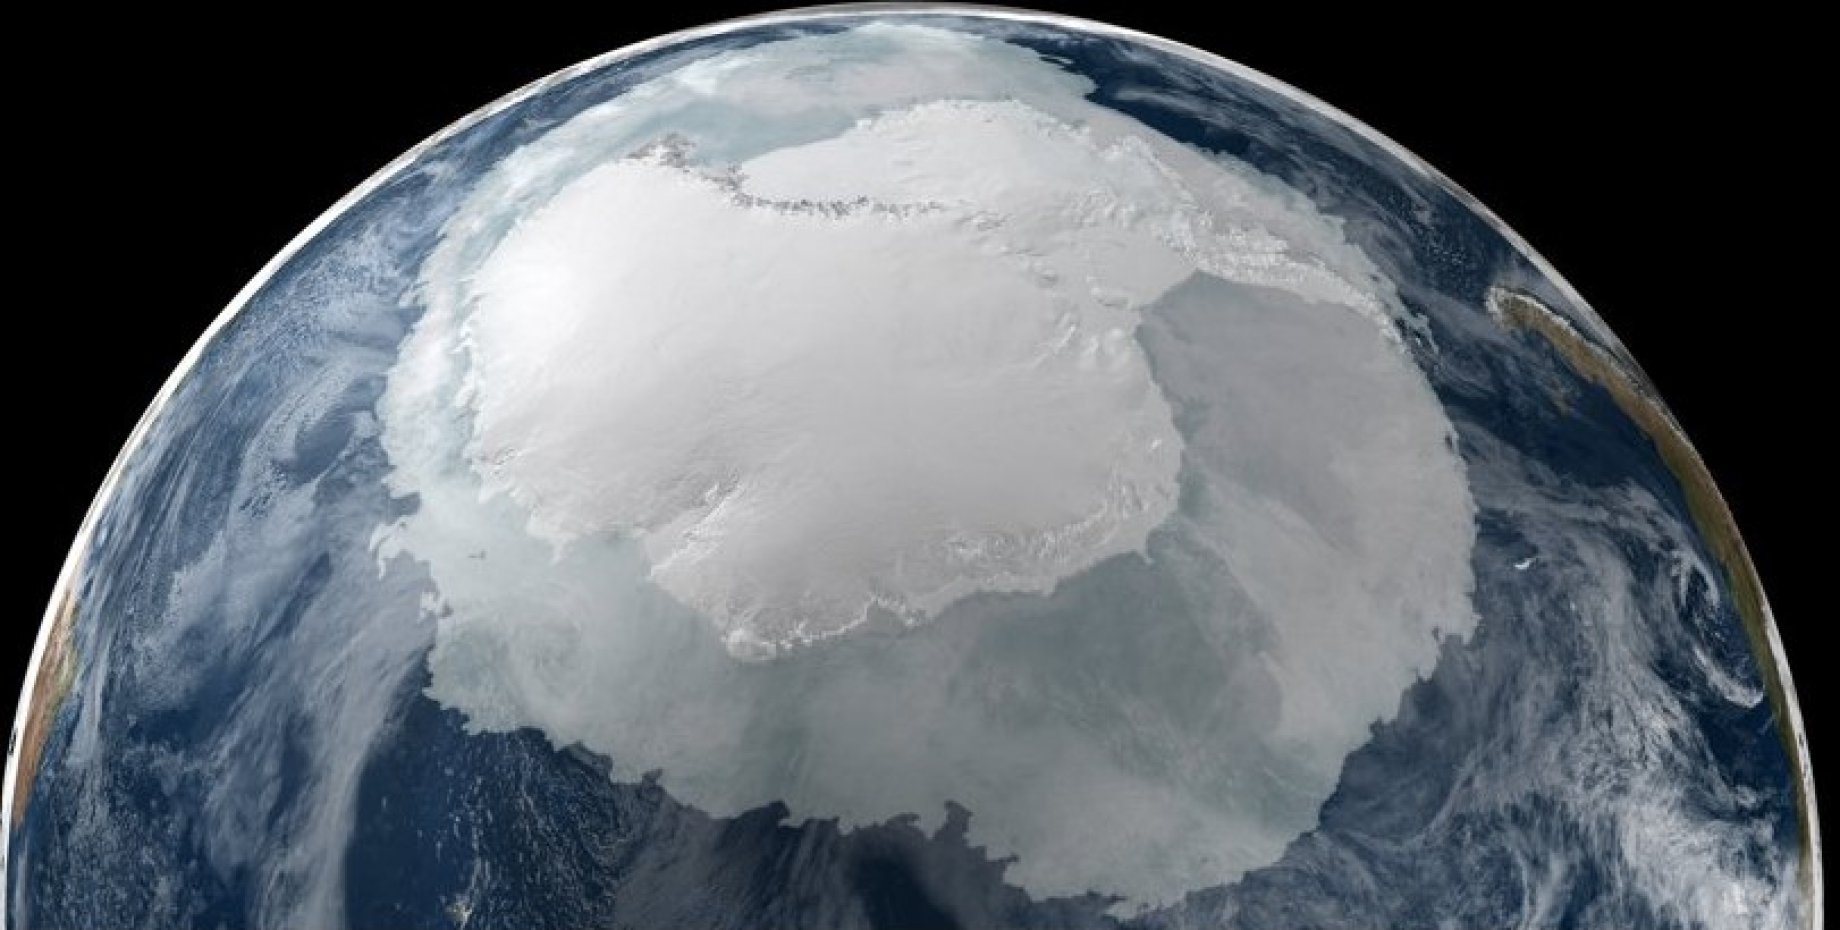 Южный полюс земли находится вблизи